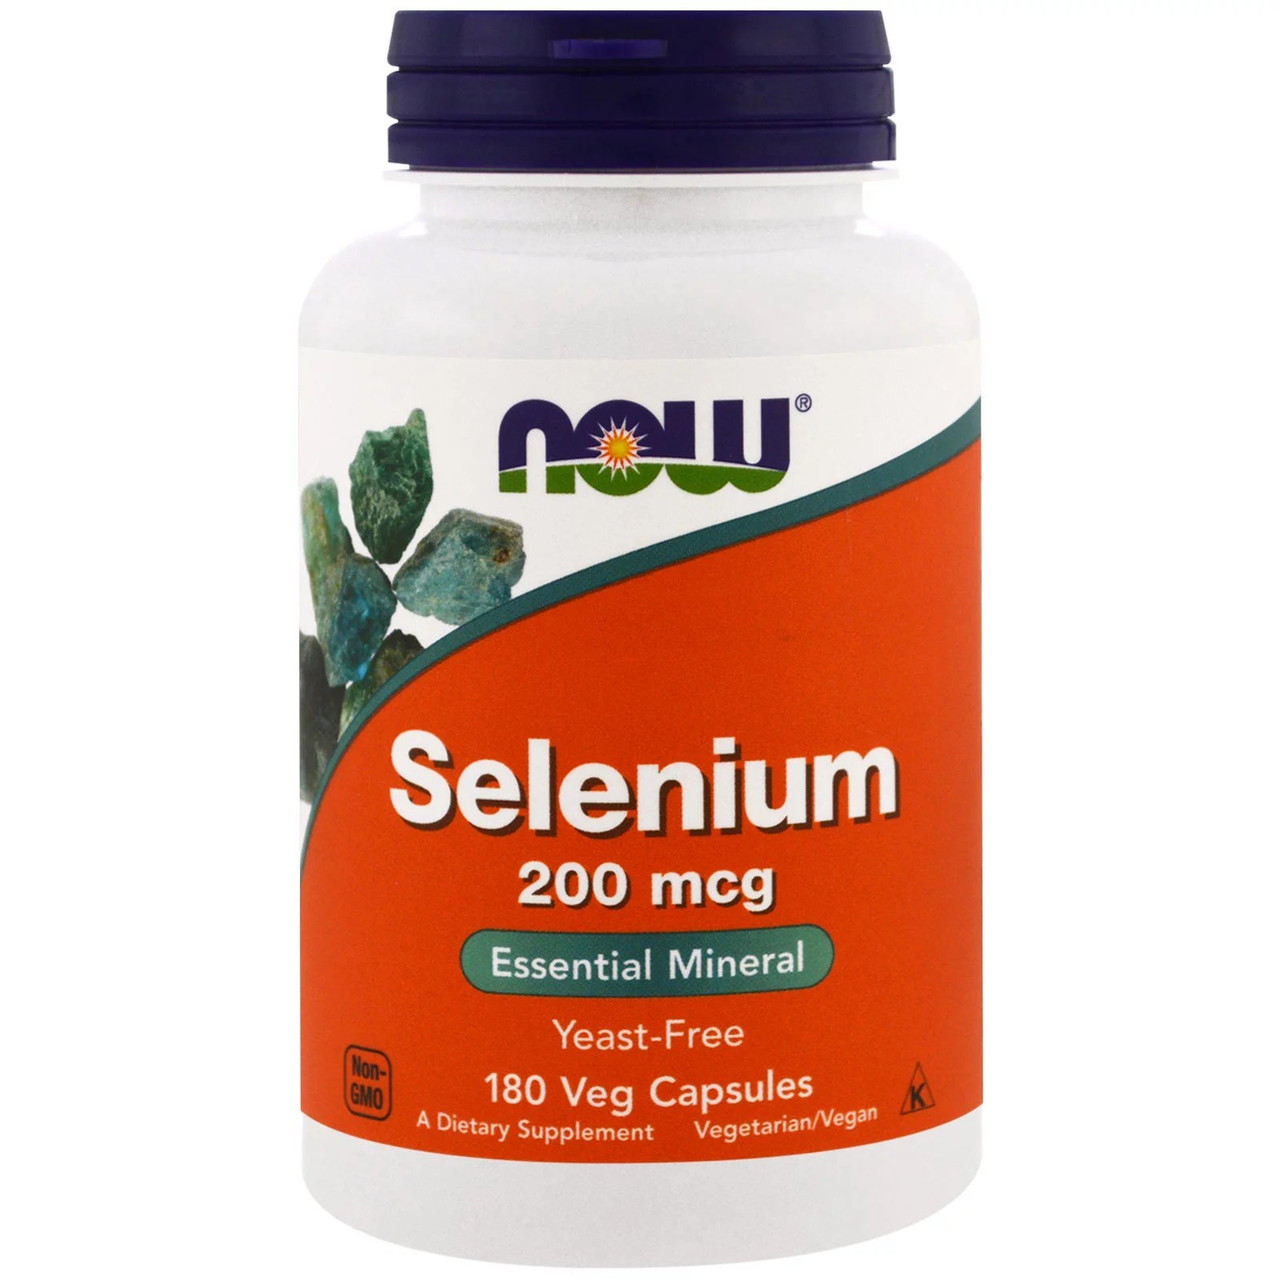 Біологічно Активні Добавки Now Foods Selenium 200 mcg, 180 Veg Capsules (NOW-01486)